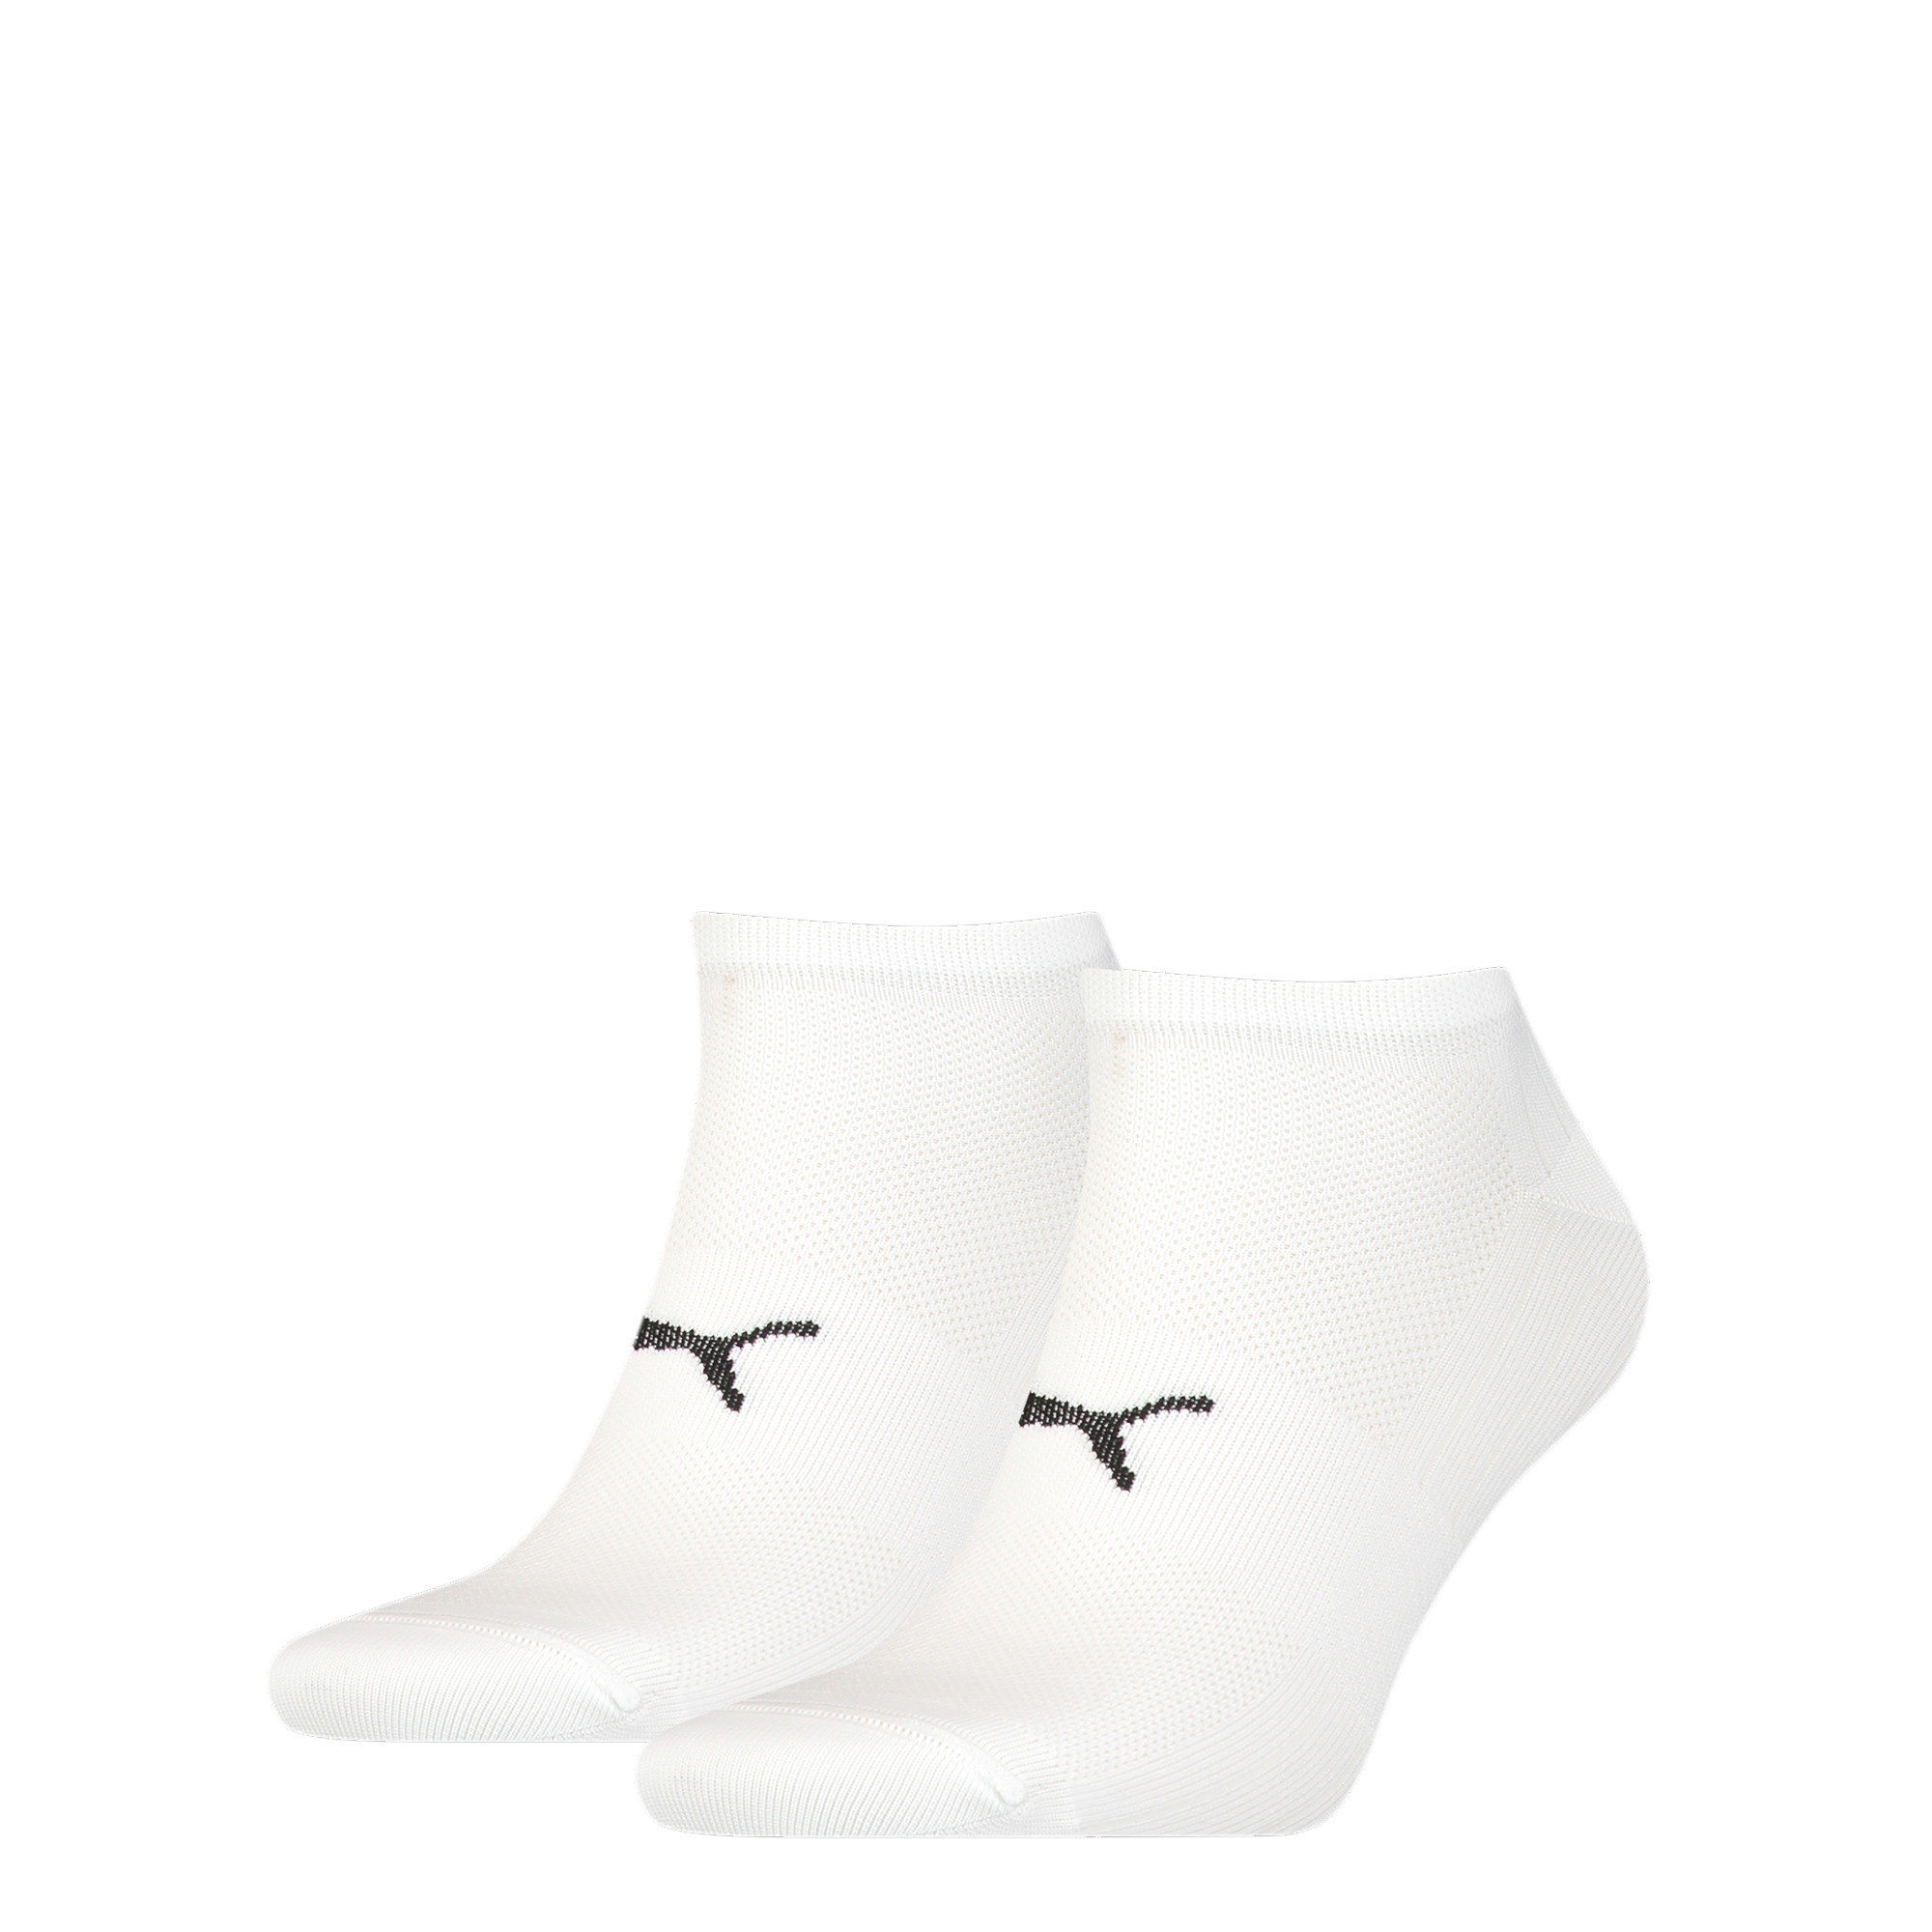 Unisex PUMA Sport Light Sneaker Socks 2 Pack In White, Size 35-38